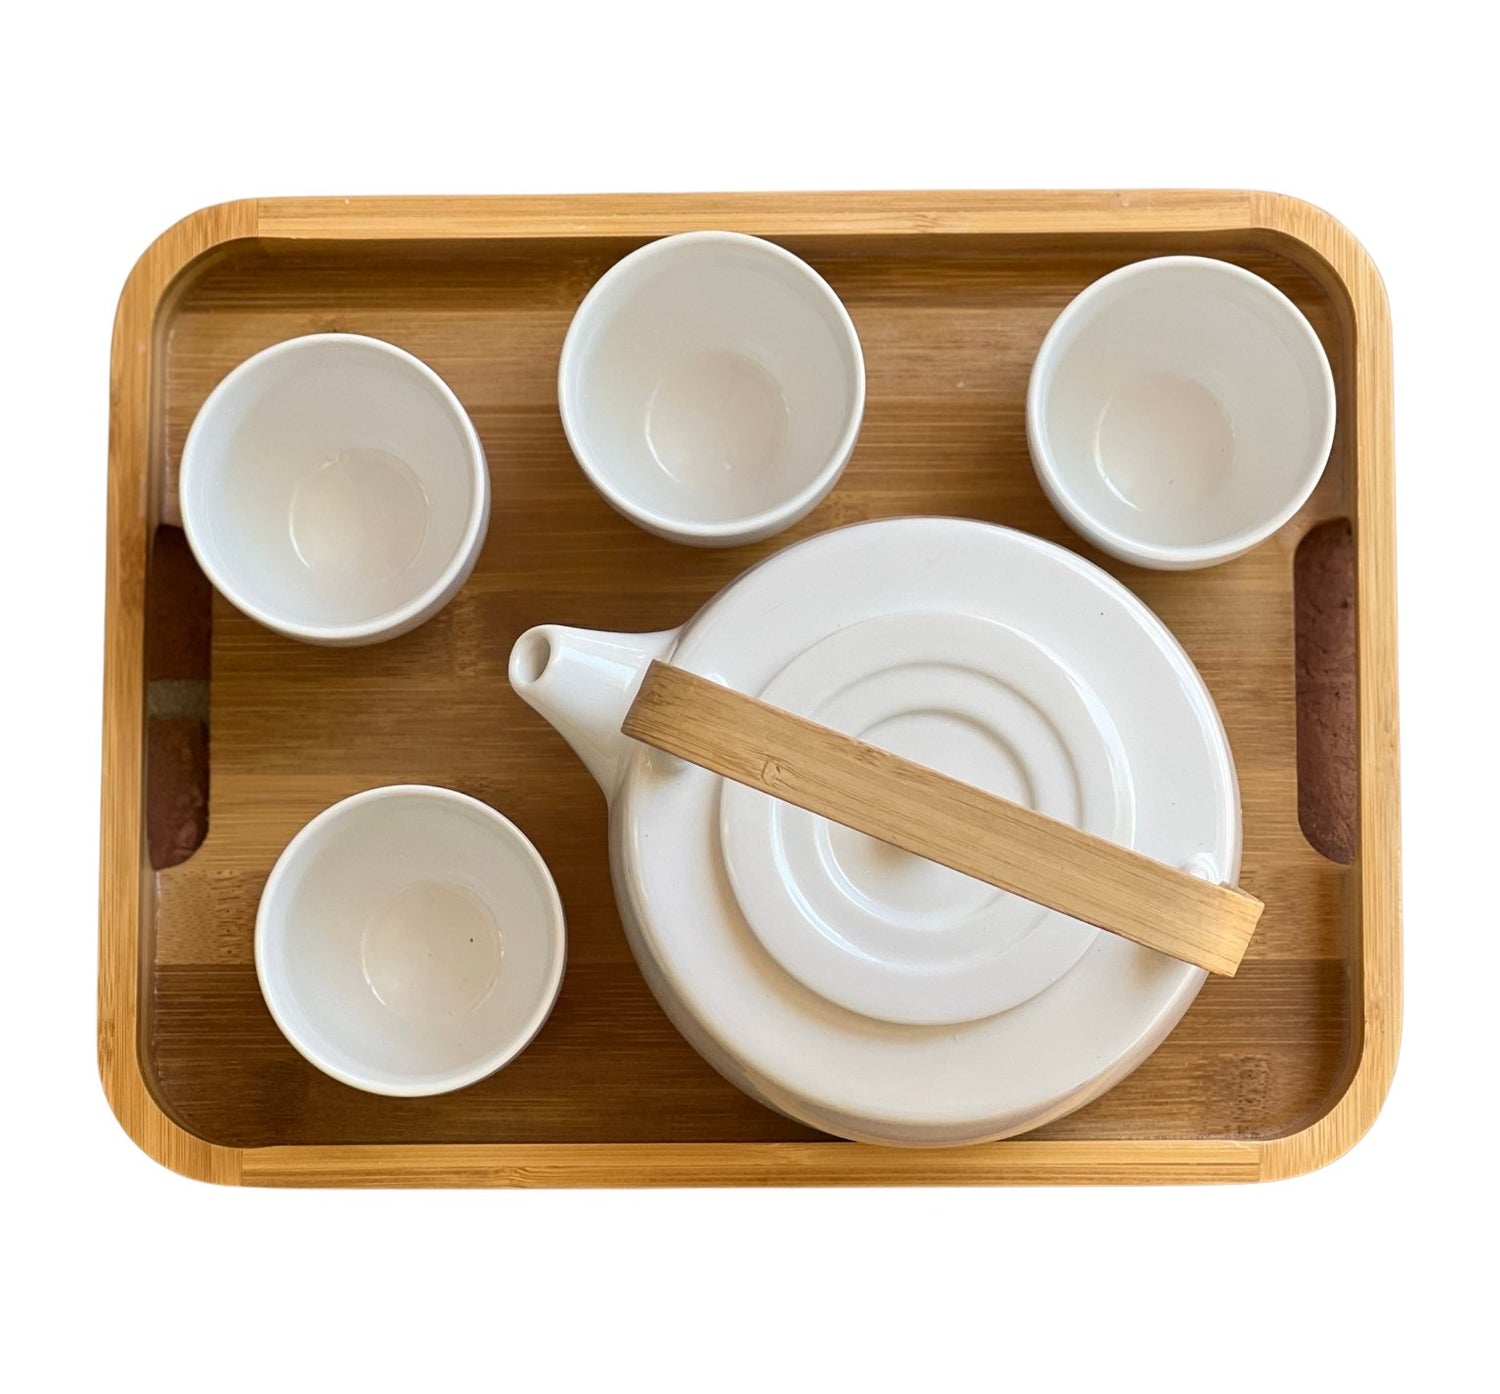 Casaware Serenity Tea Set - Loose Leaf Tea Market